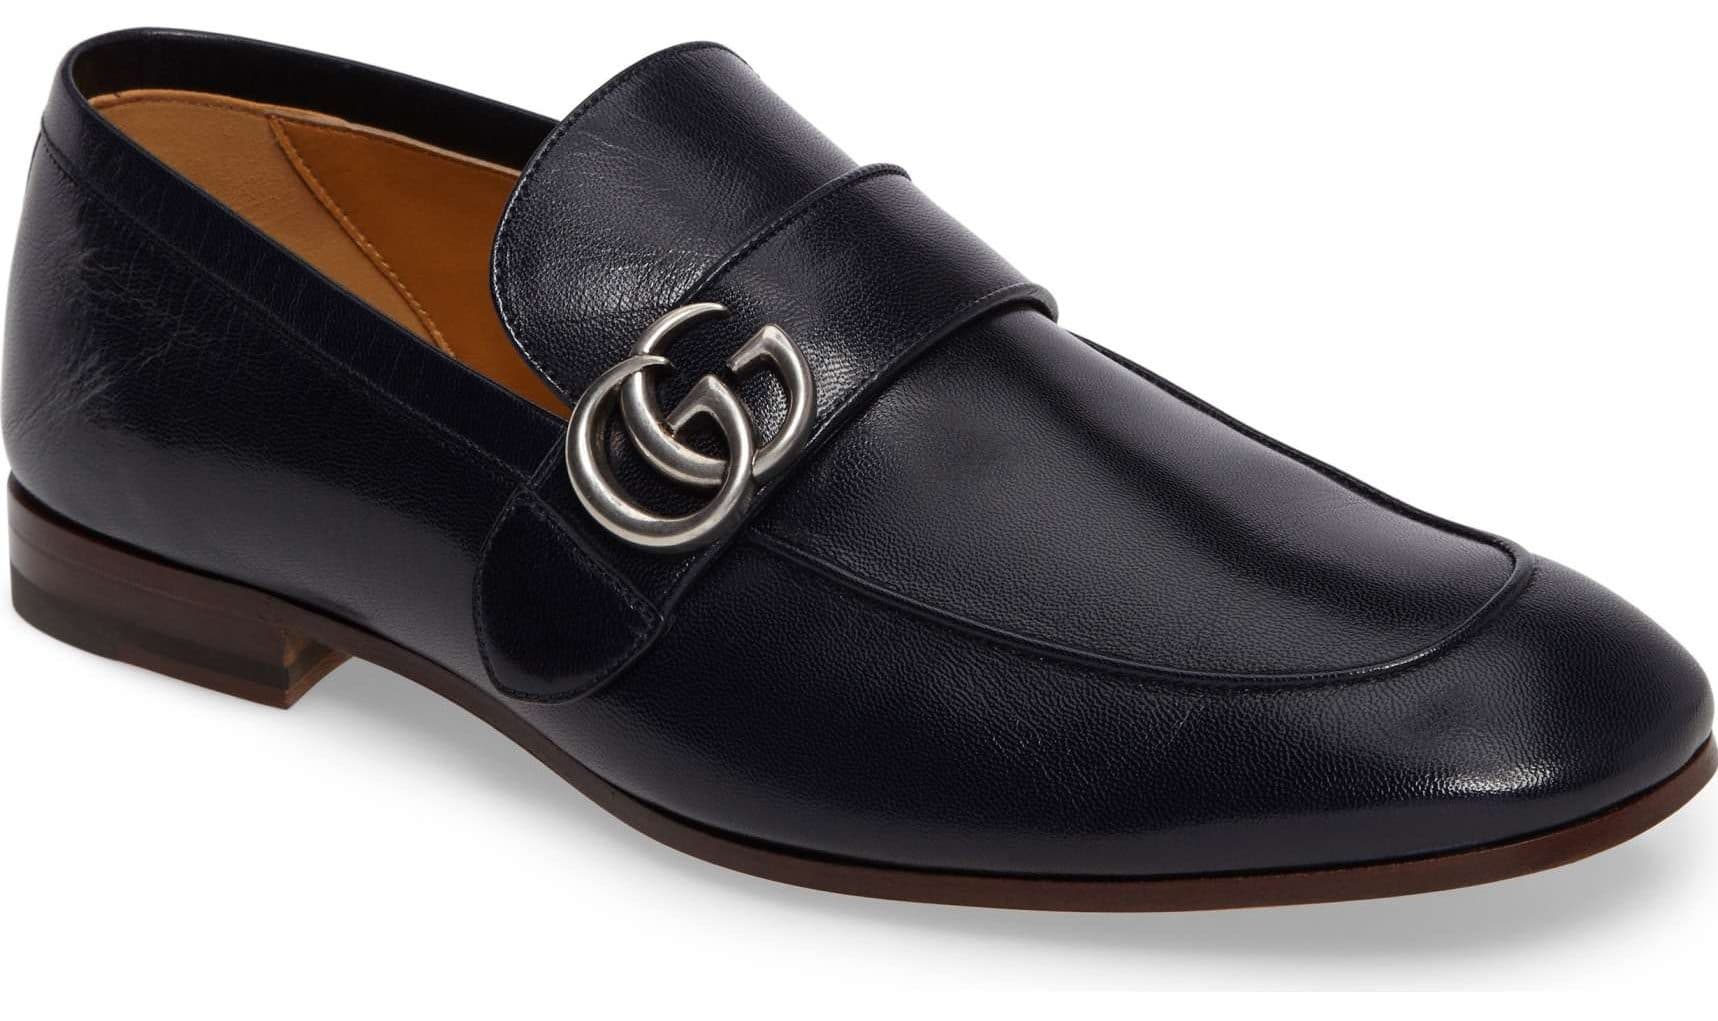 mens designer loafer shoes